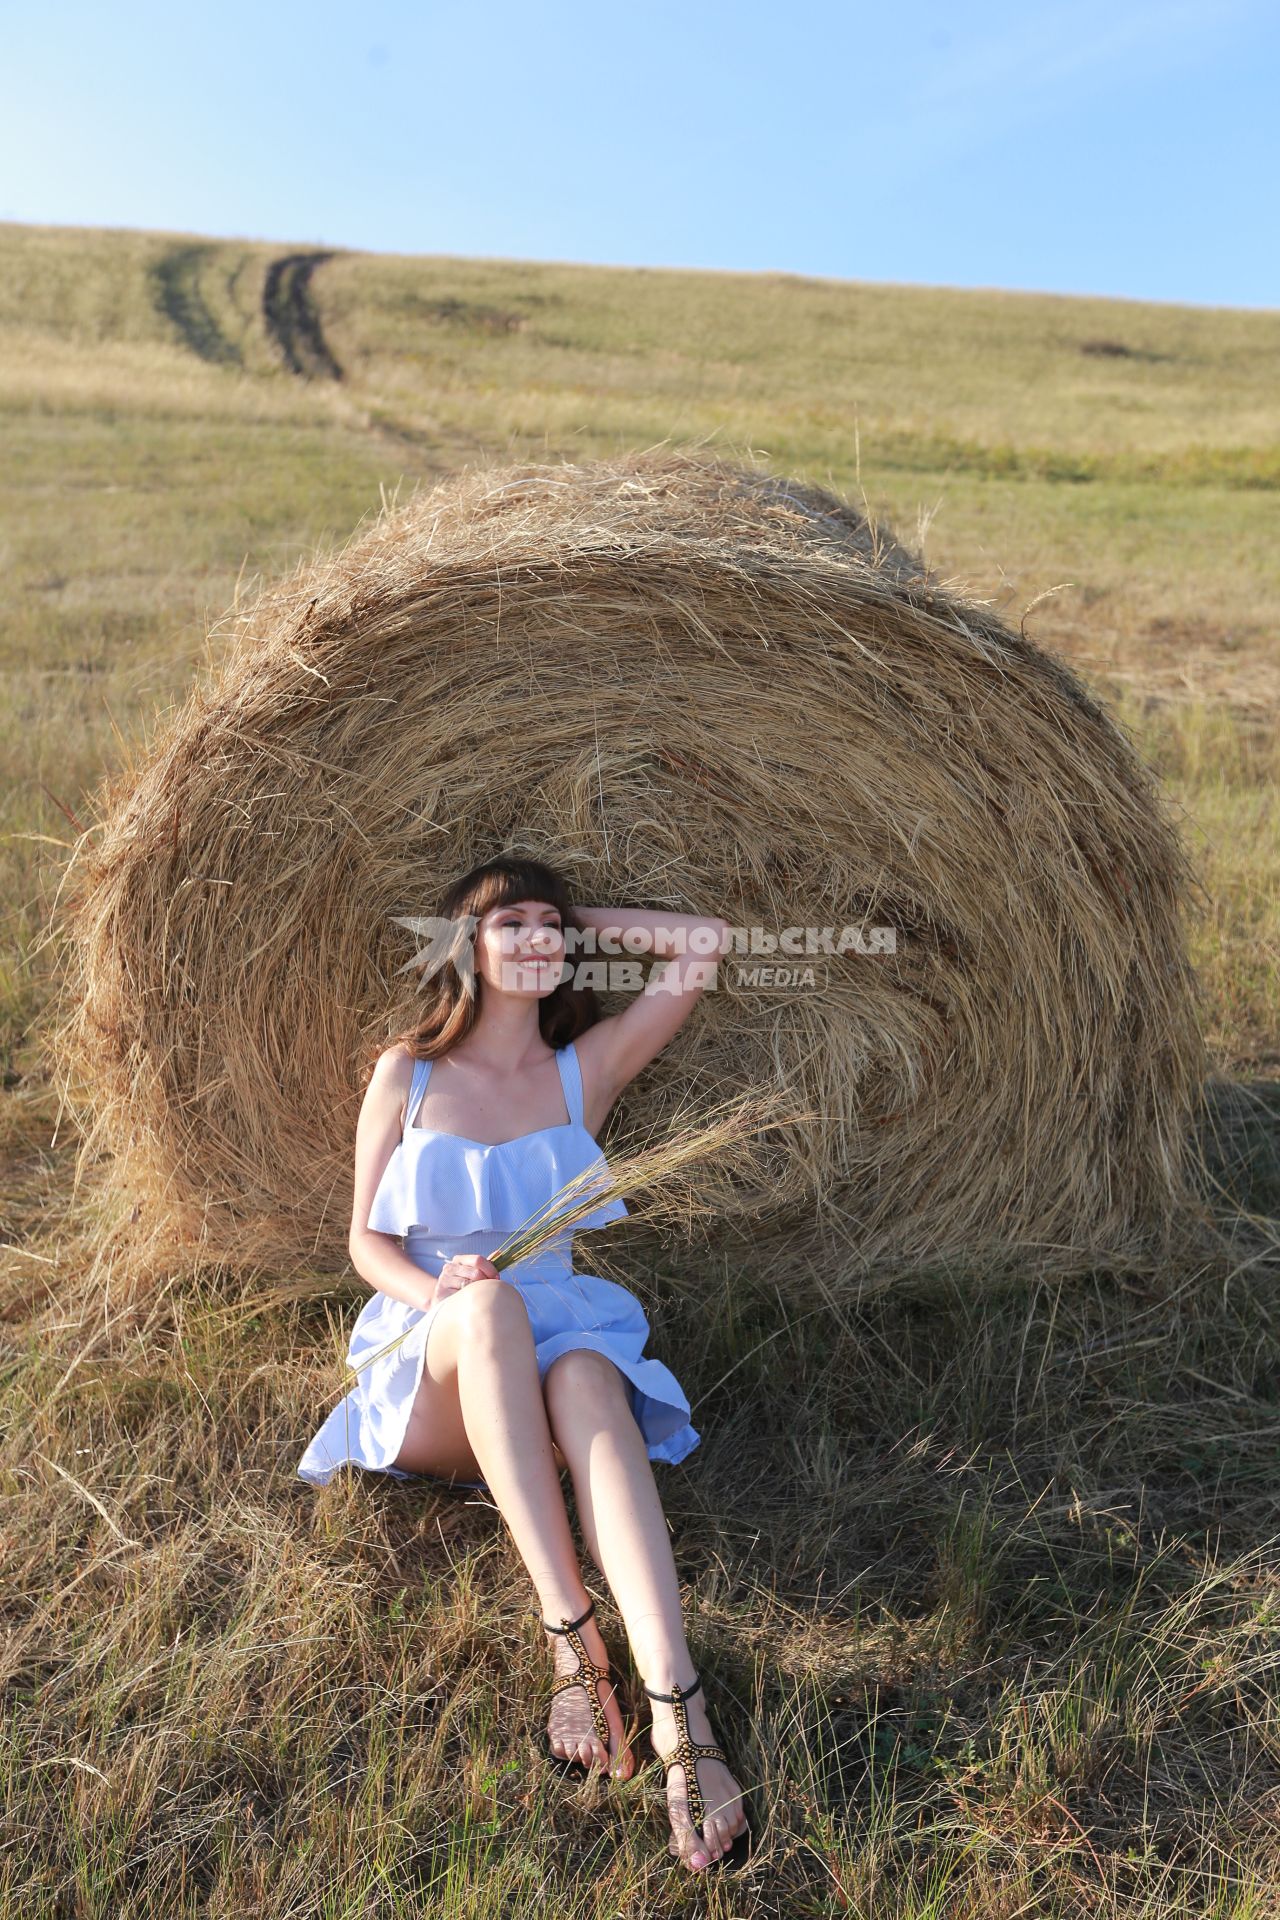 Красноярск.   Девушка отдыхает у стога сена.